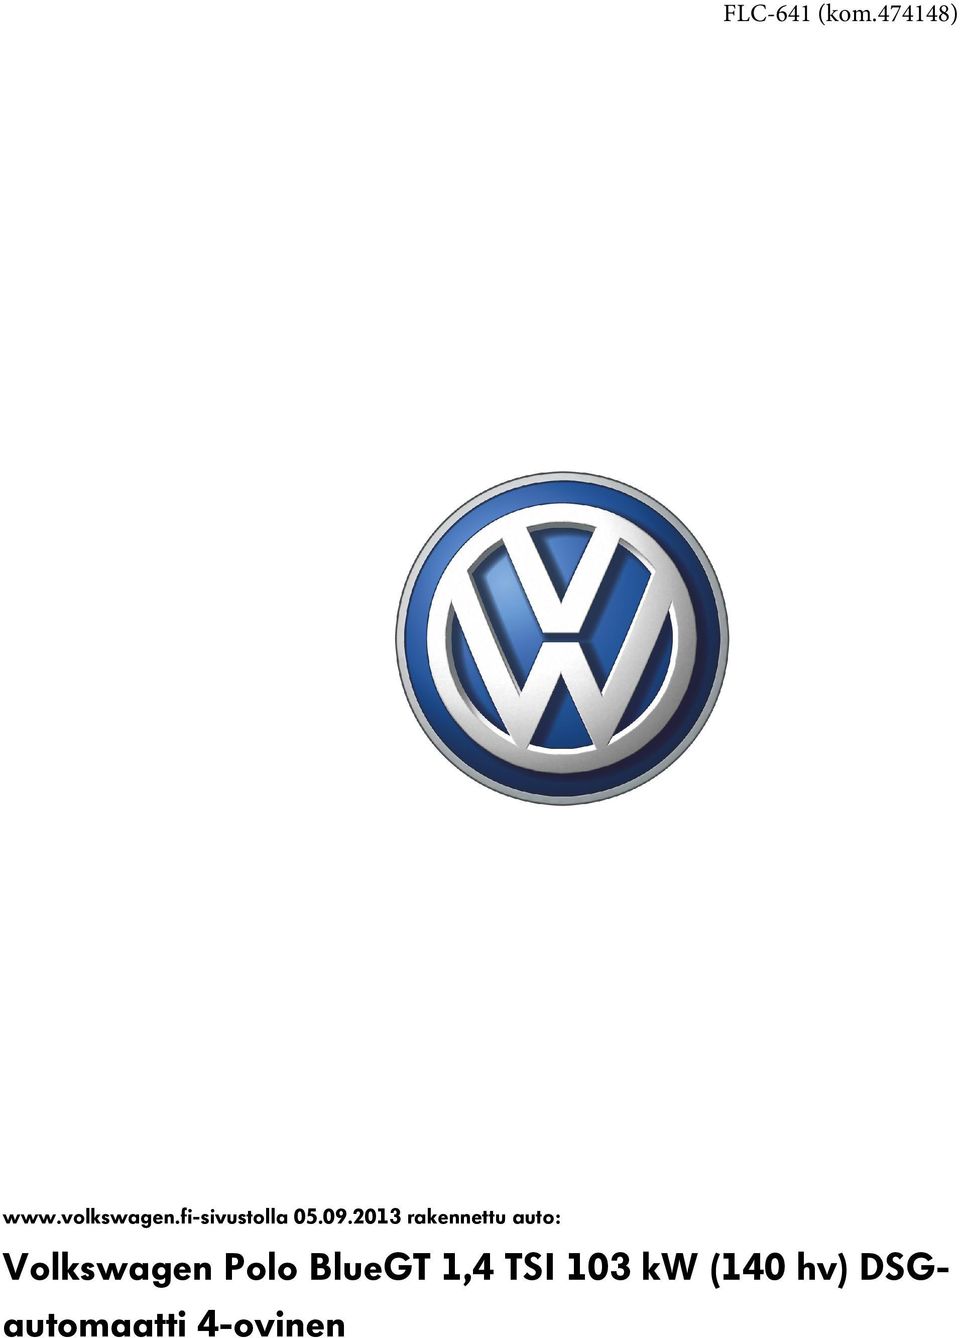 2013 rakennettu auto: Volkswagen